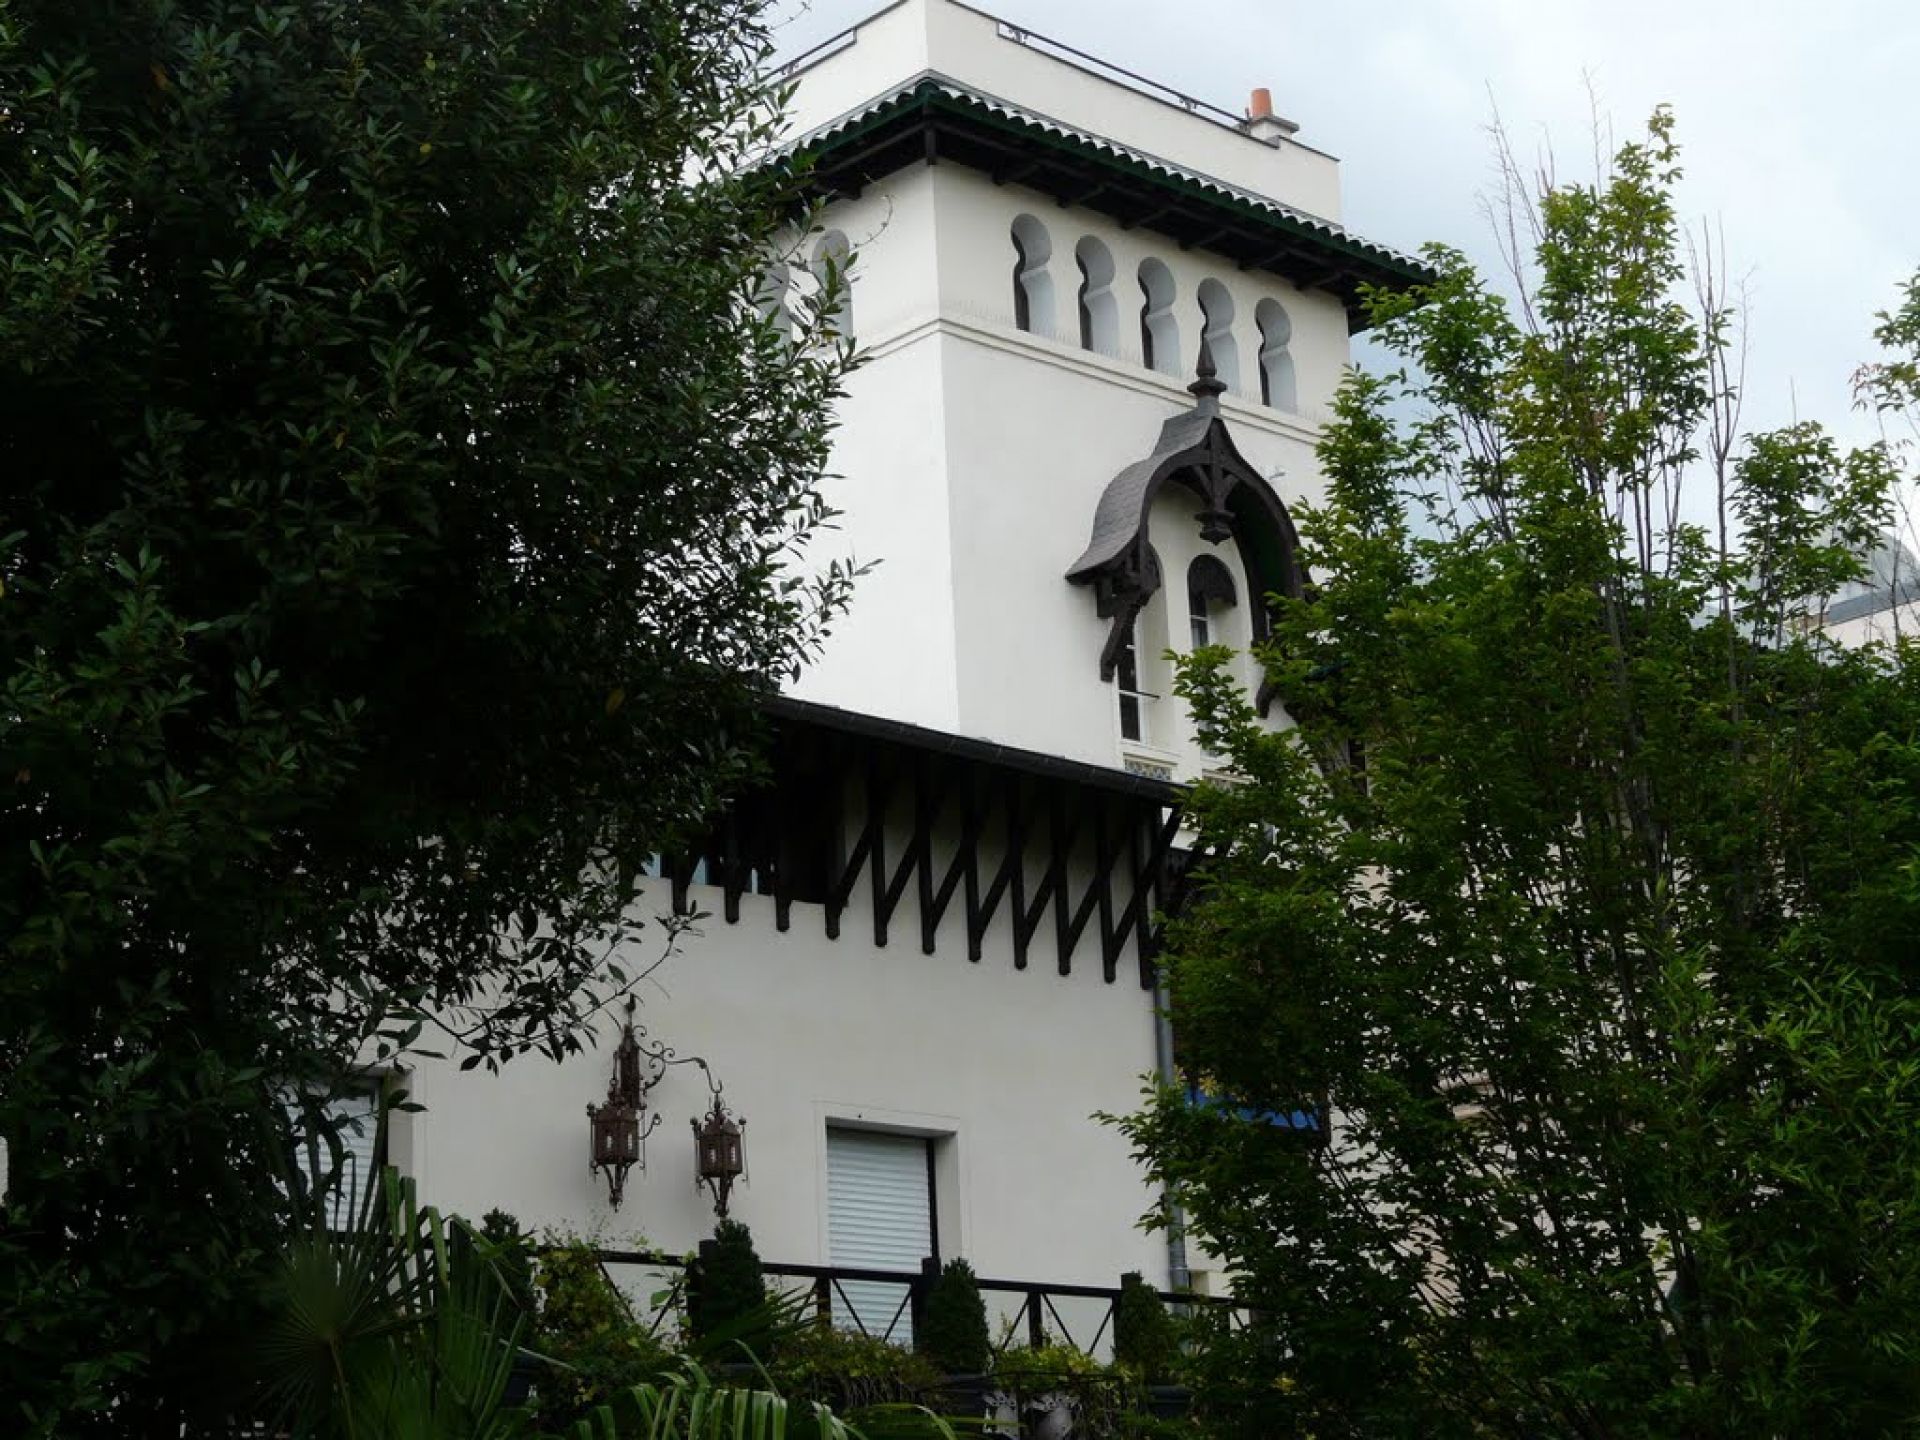 Focus sur un monument historique de Levallois Perret : la villa Mauresque